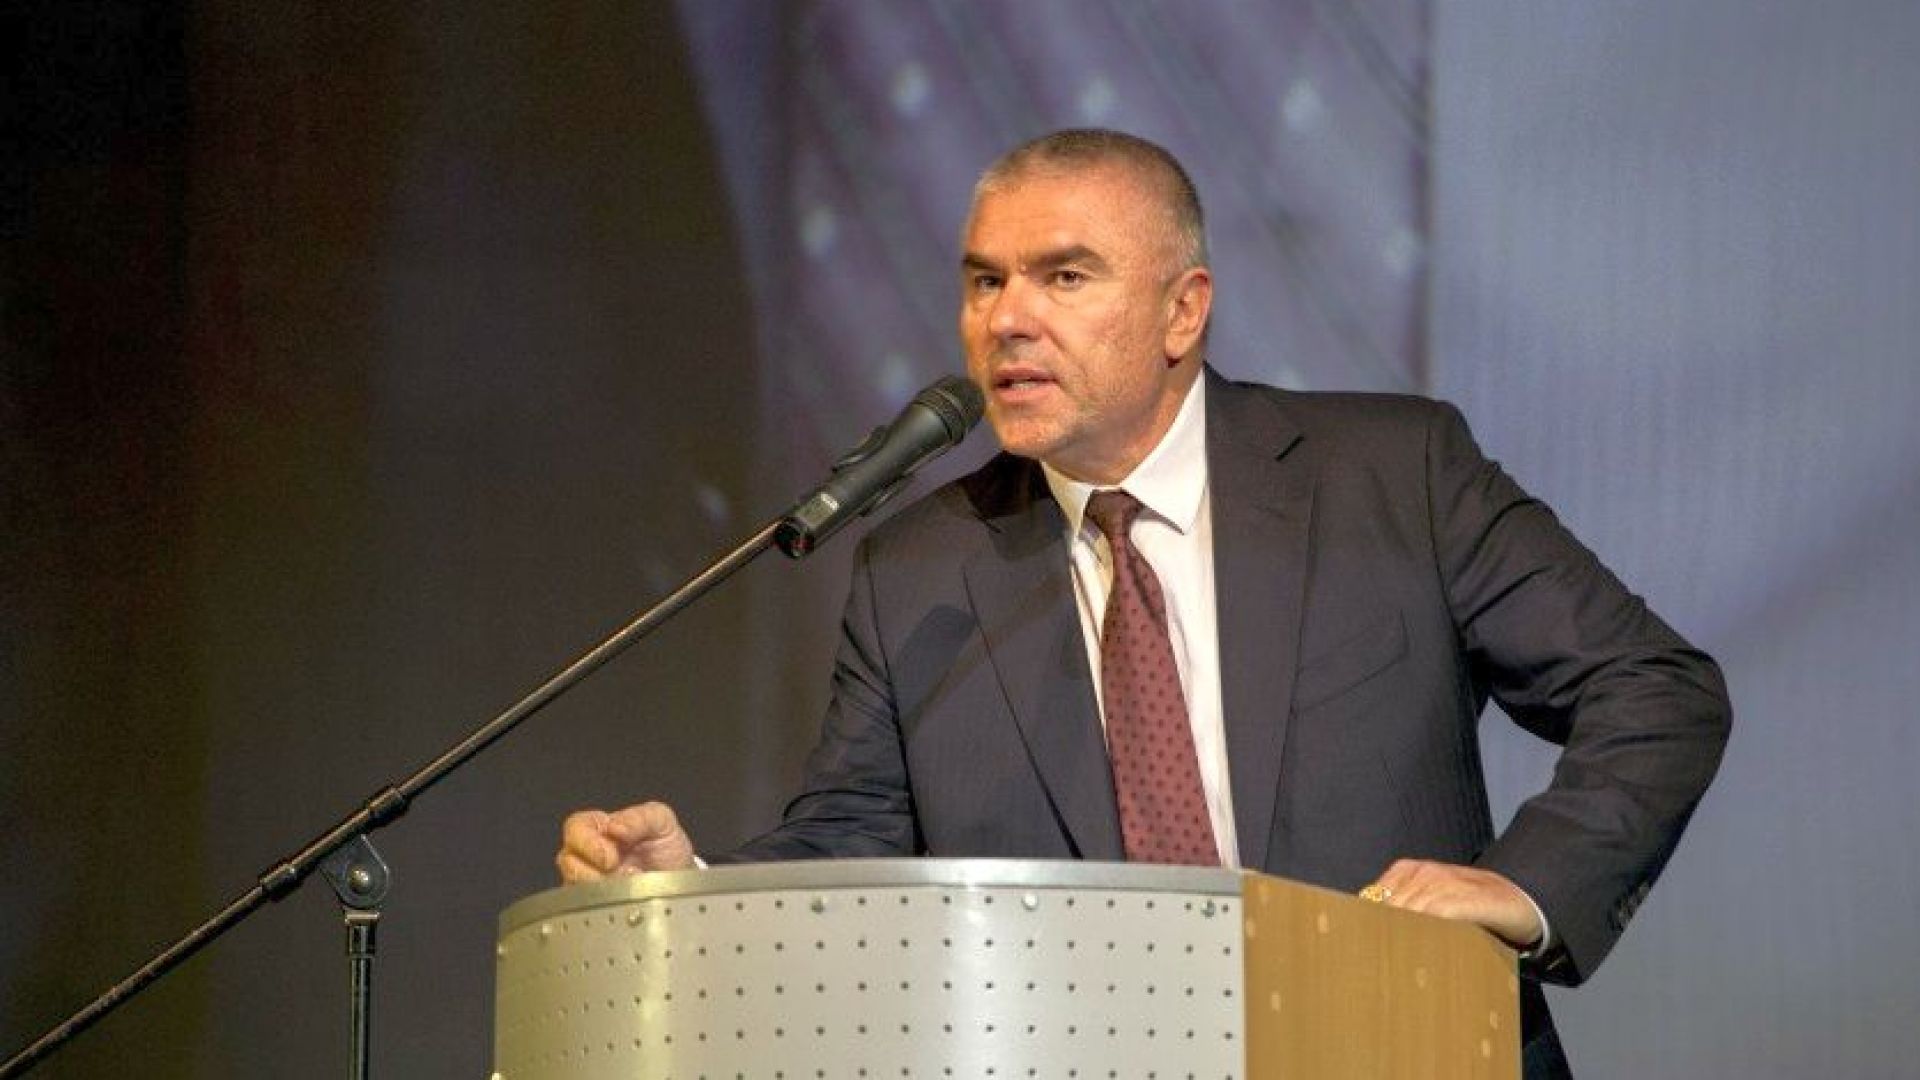 Веселин Марешки, председател на ВОЛЯ заяви преди окончателния резултат от